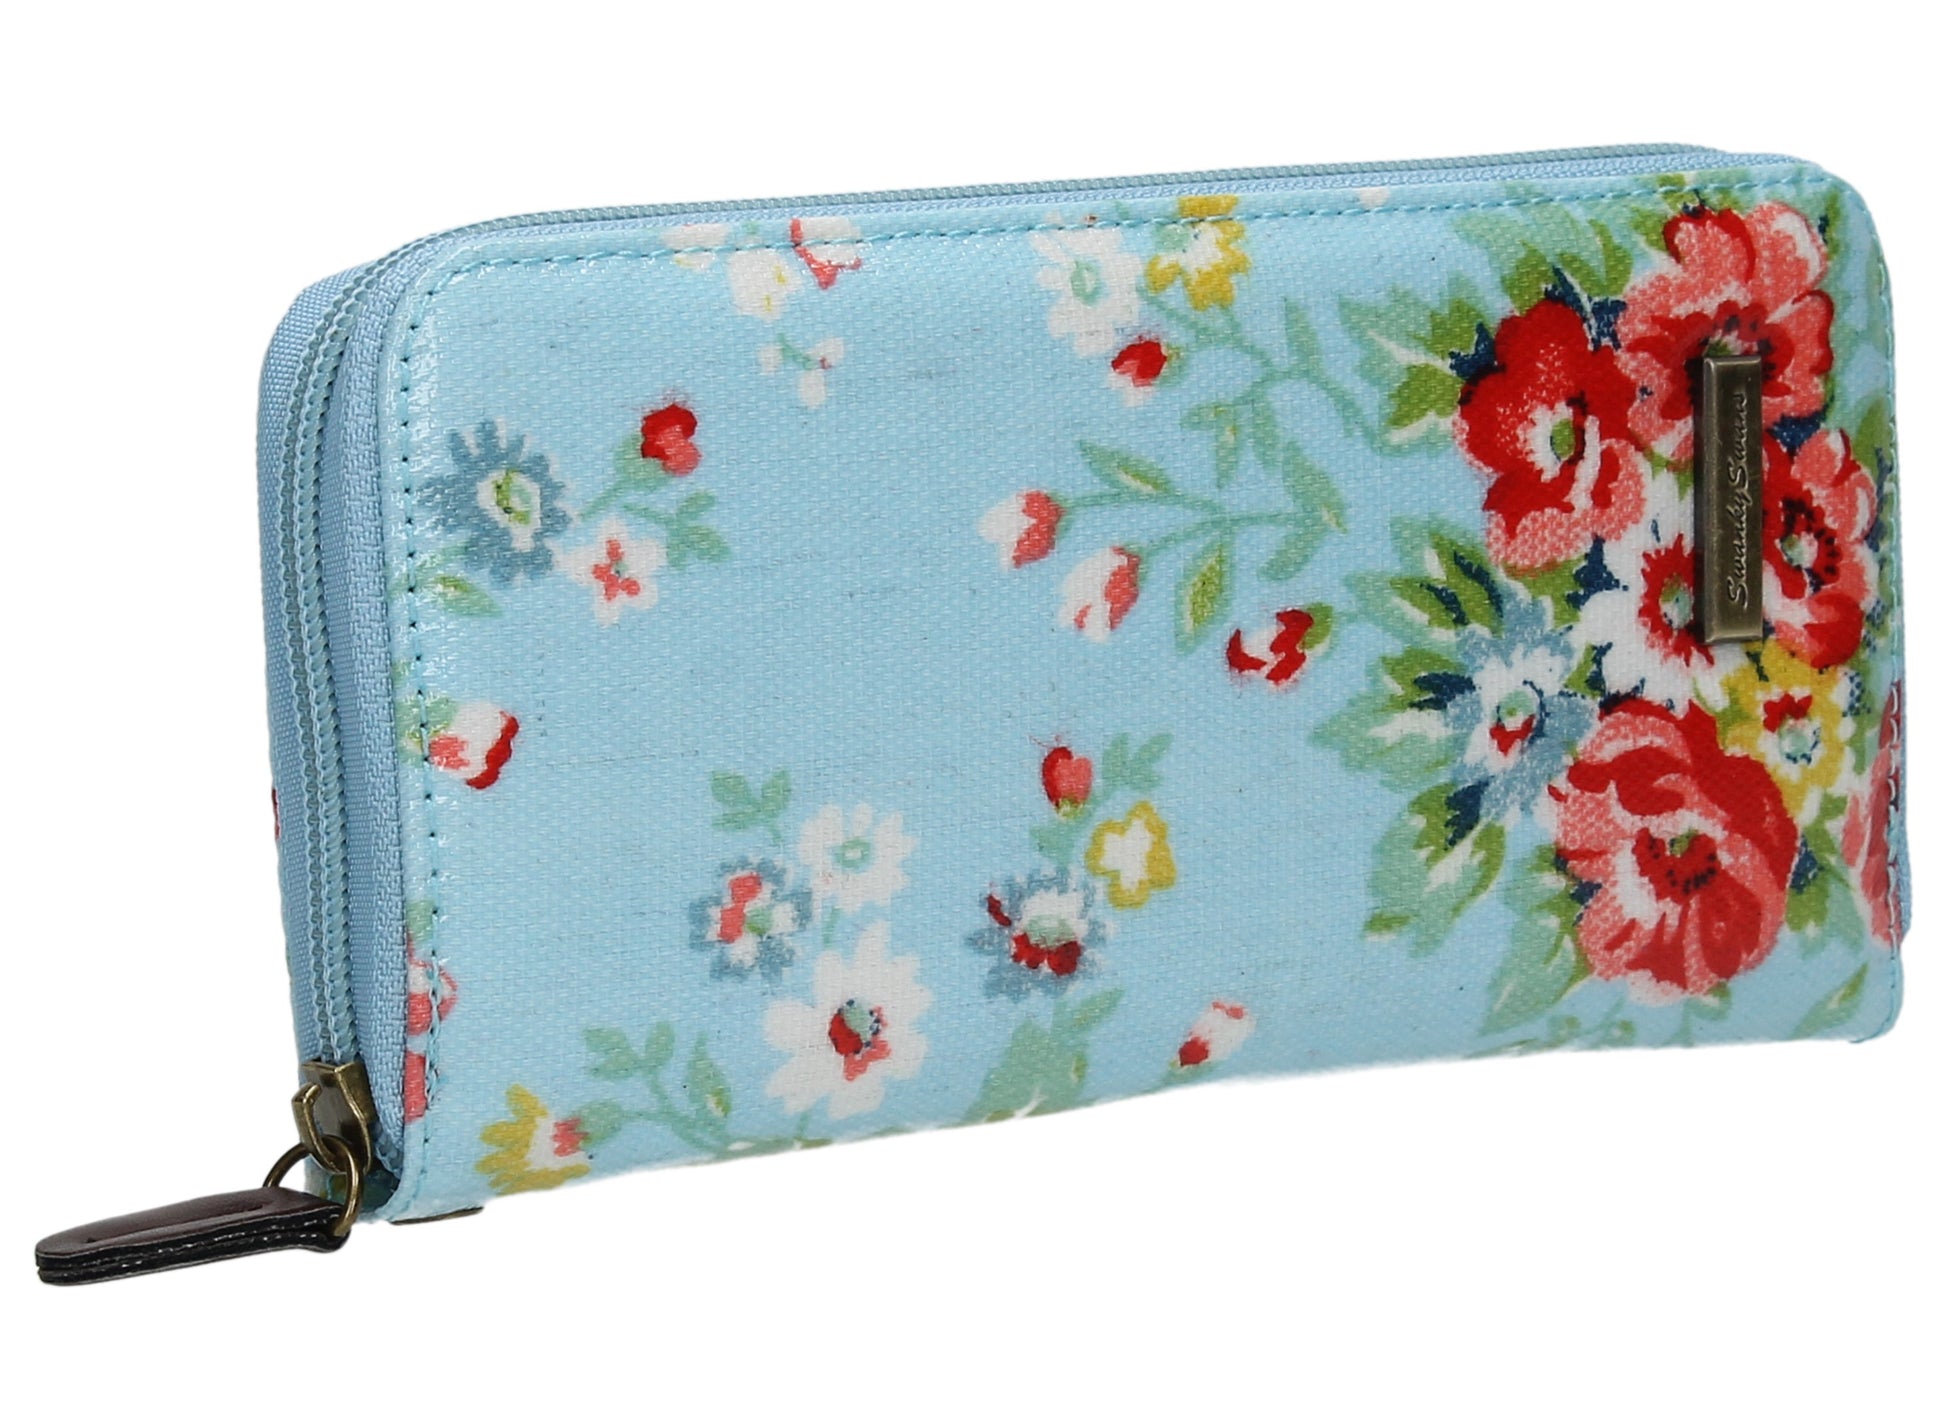 Swanky Swank Hayley Floral Large Purse Light BlueCheap Cute School Wallets Purses Bags Animal